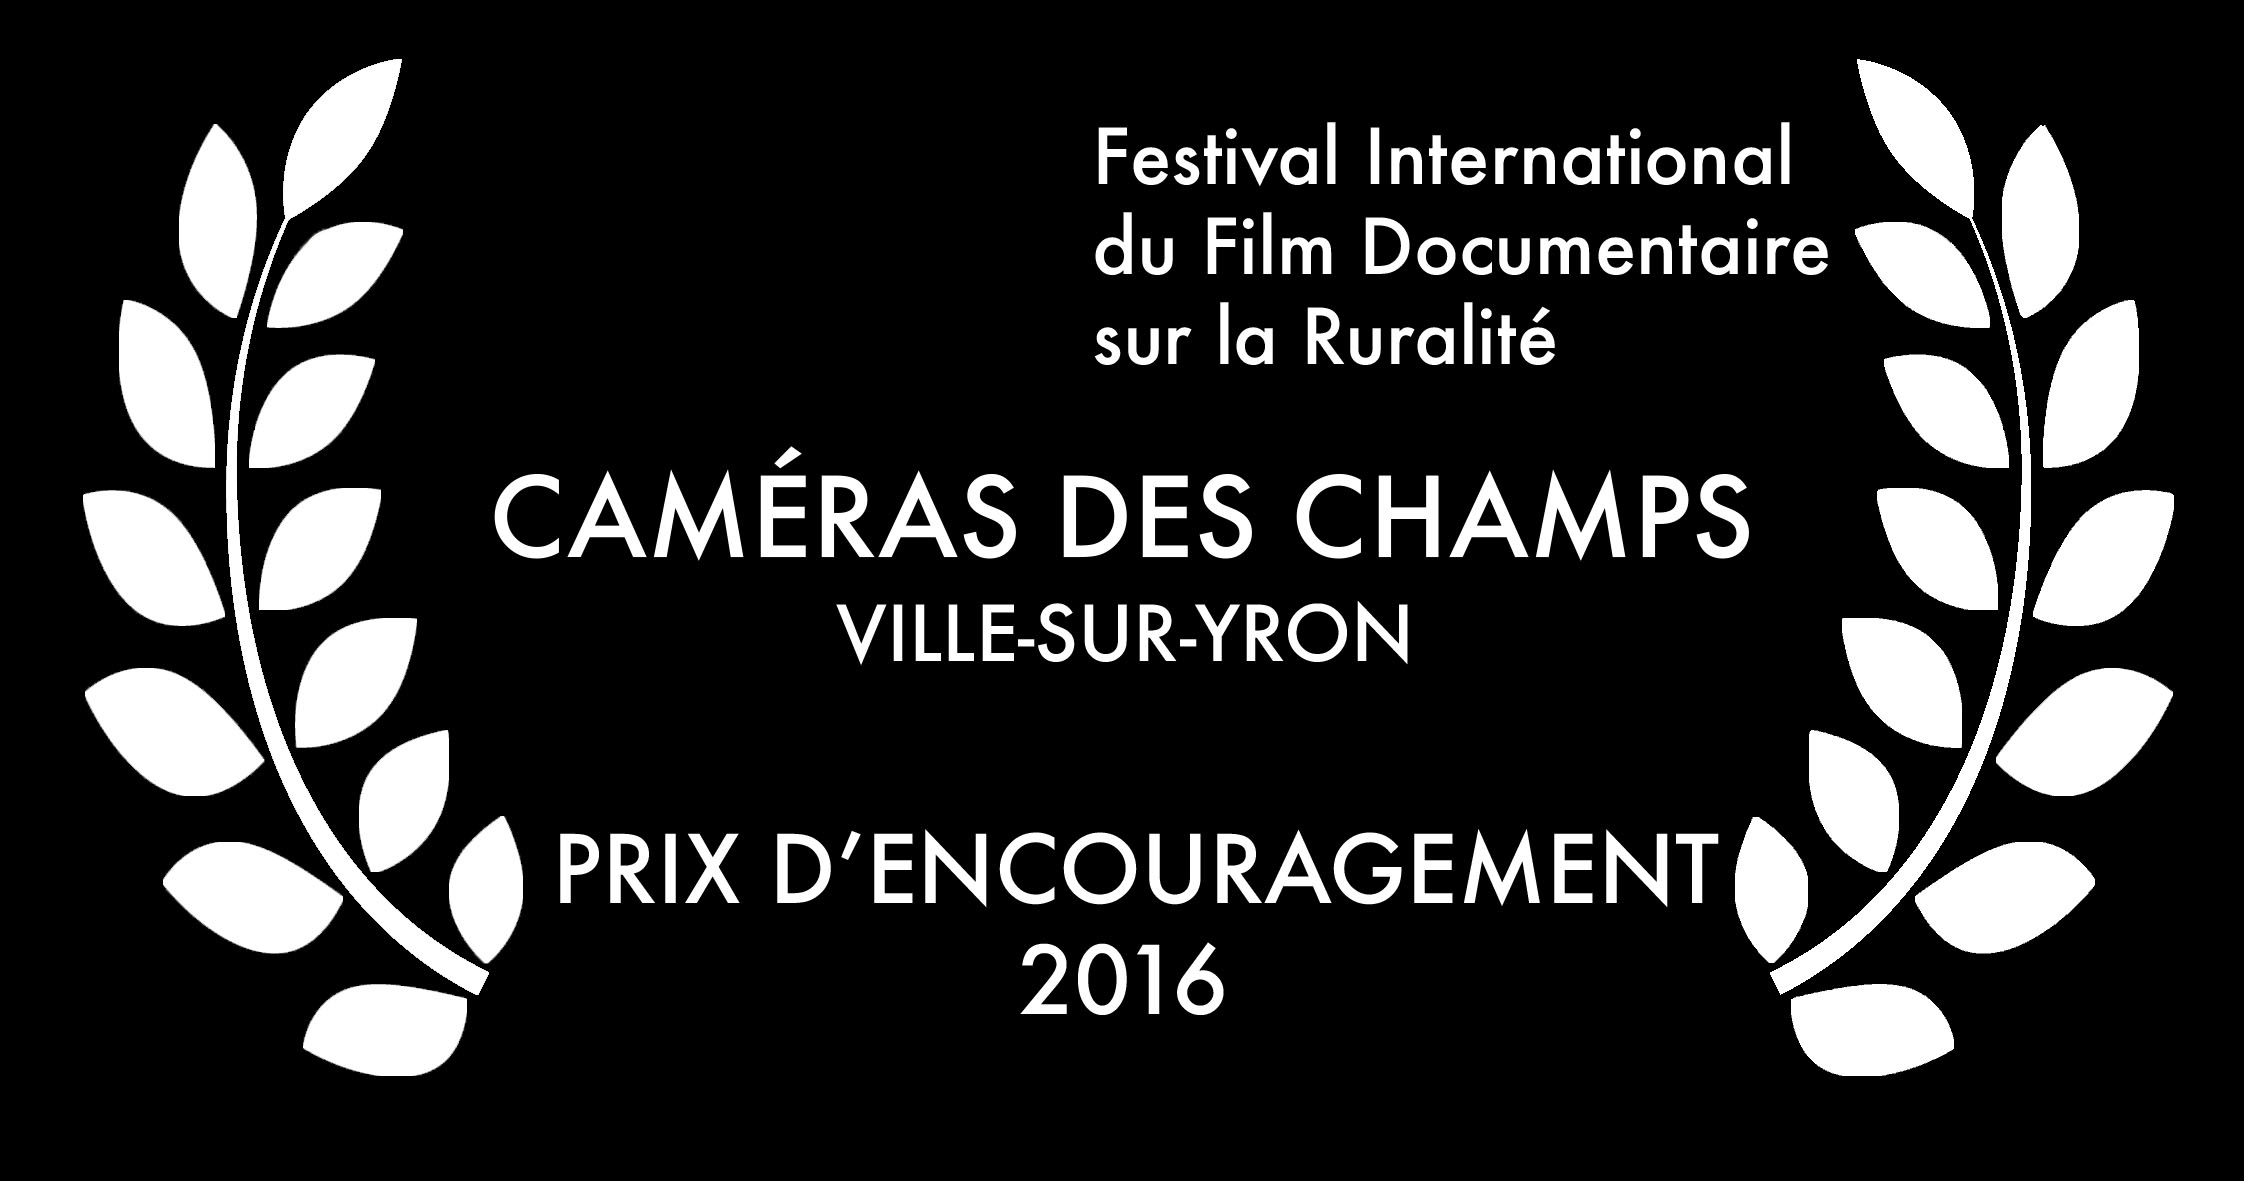 Festival International du Film Documentaire sur la Ruralité 2016 - Prix d'encouragement